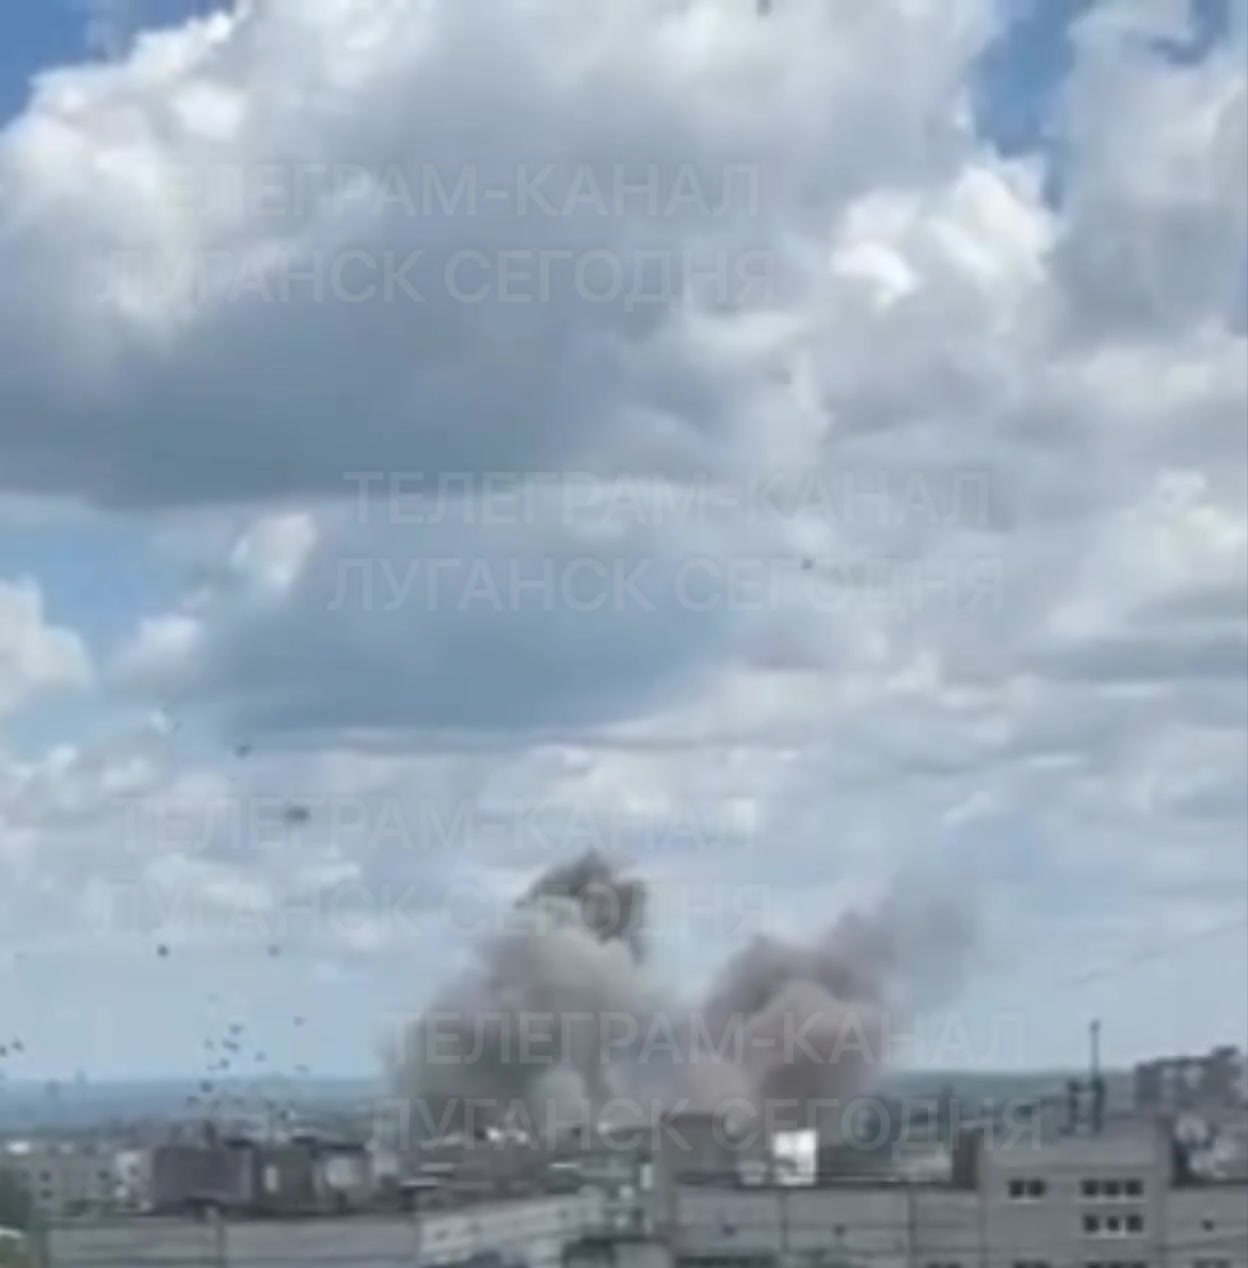 Ataques com mísseis em Luhansk